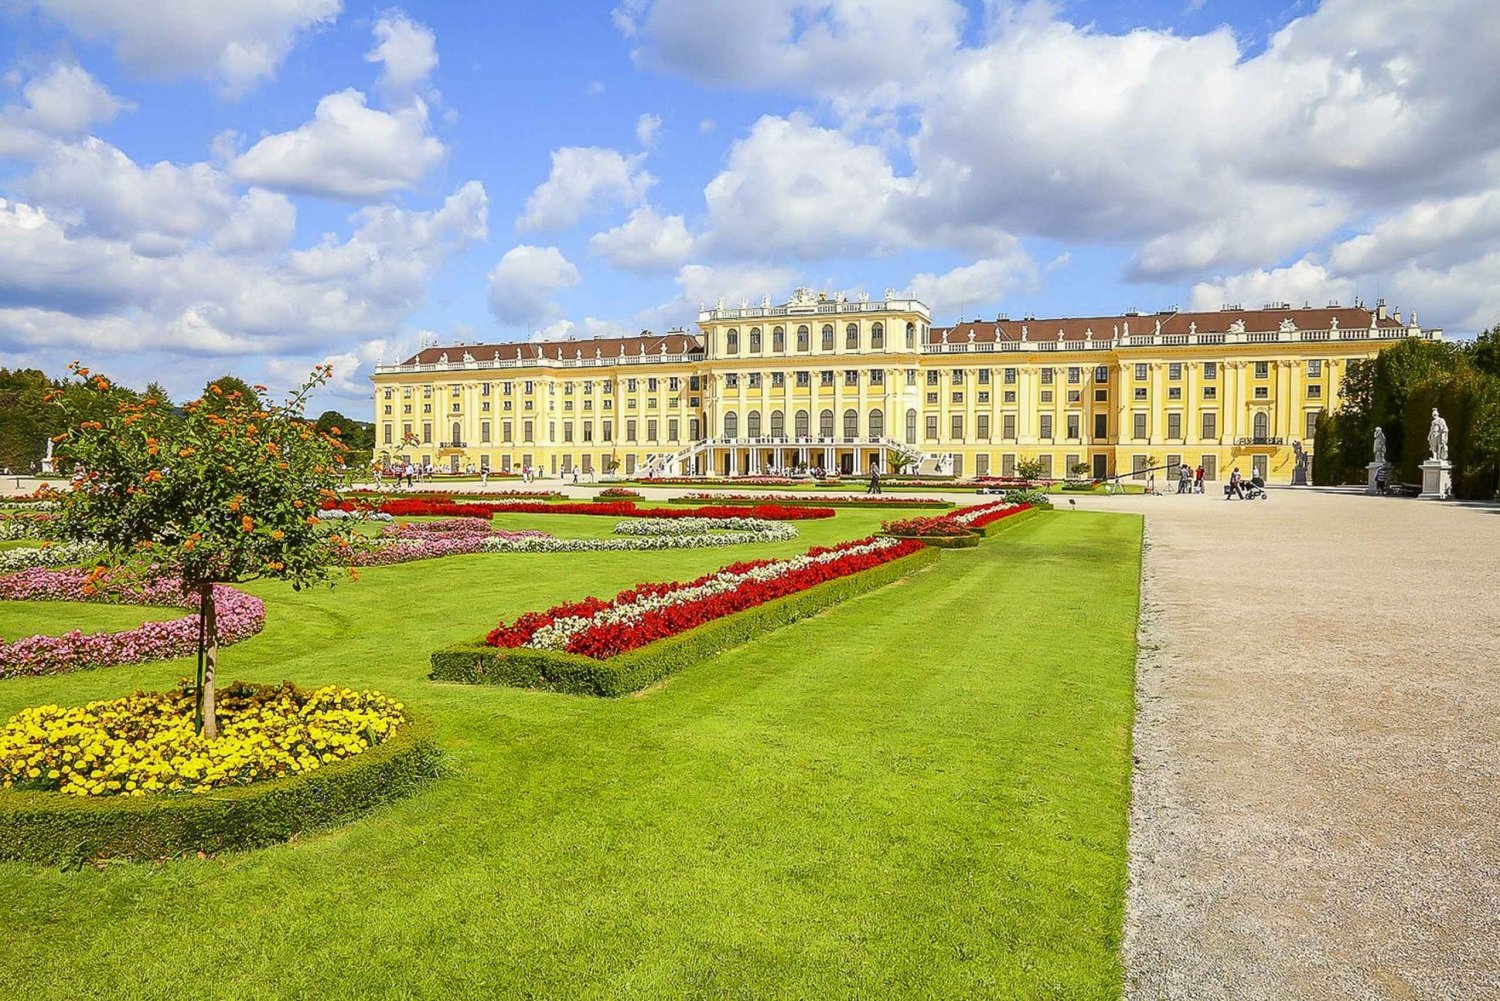 Vienne : Visite du château de Schönbrunn et de ses jardins en coupe-file